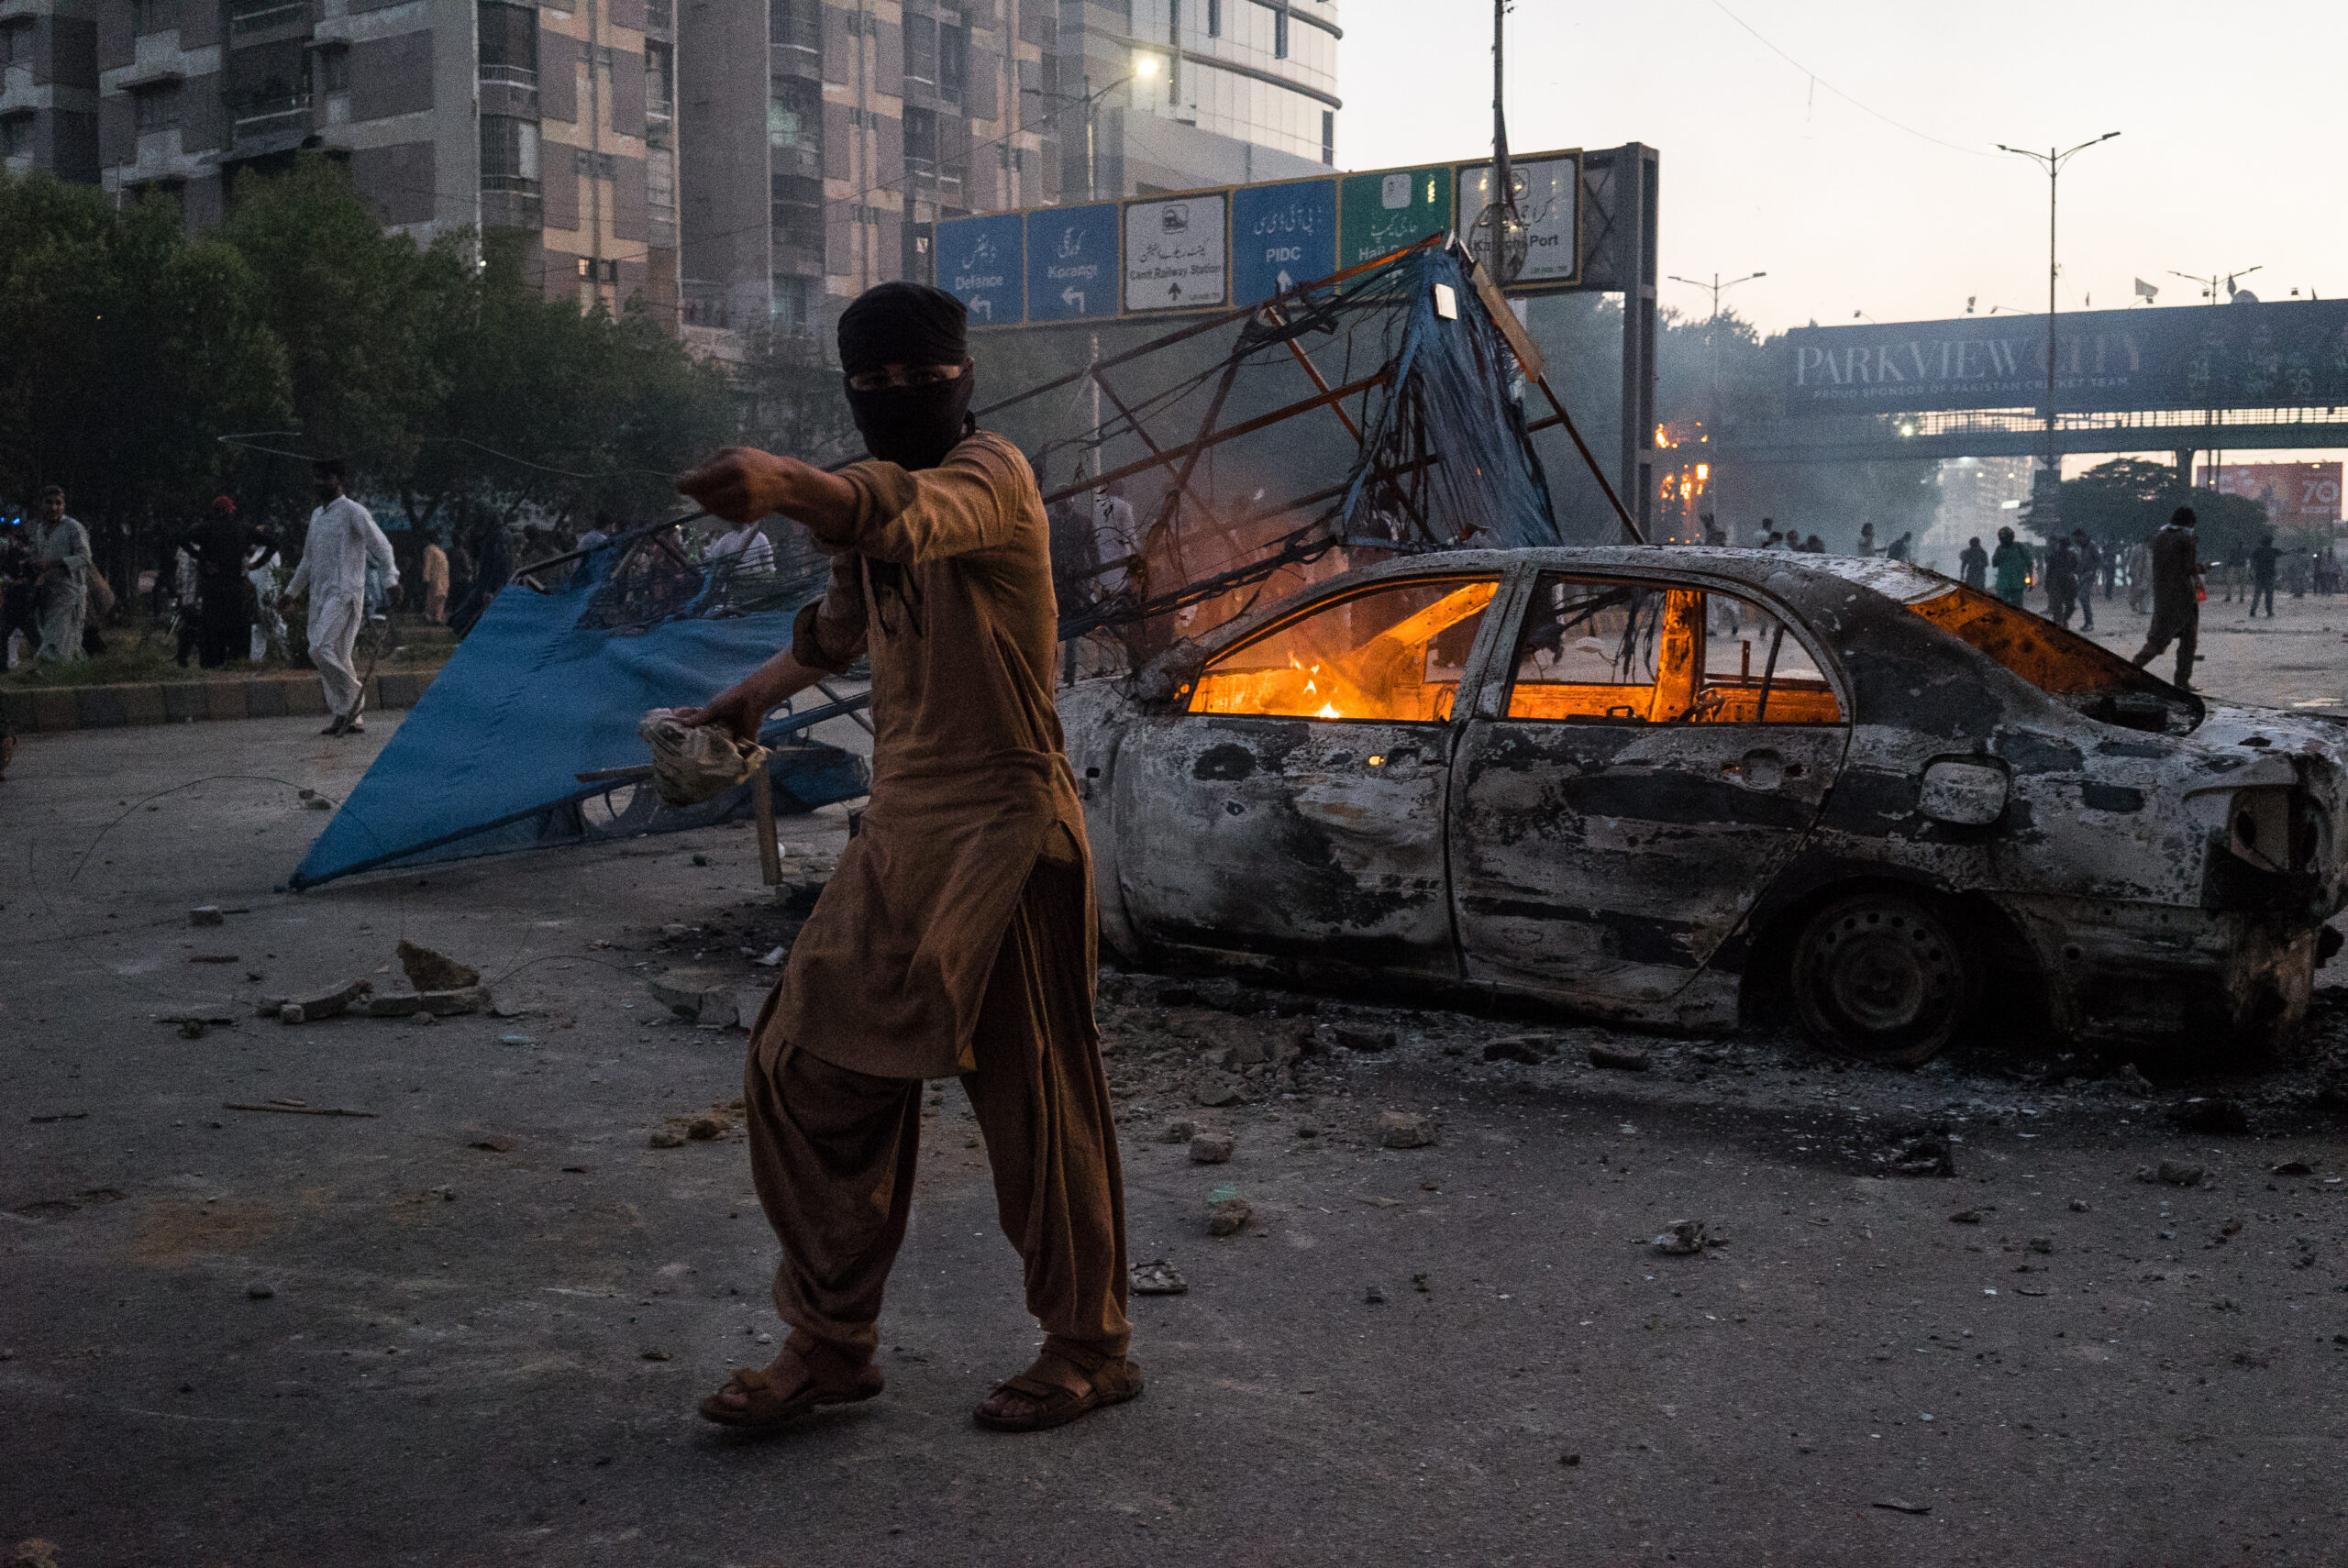 Simpatizante del PTI delante de un vehículo incendiado por manifestantes, Karachi, 9 de mayo. © Laurent Gayer